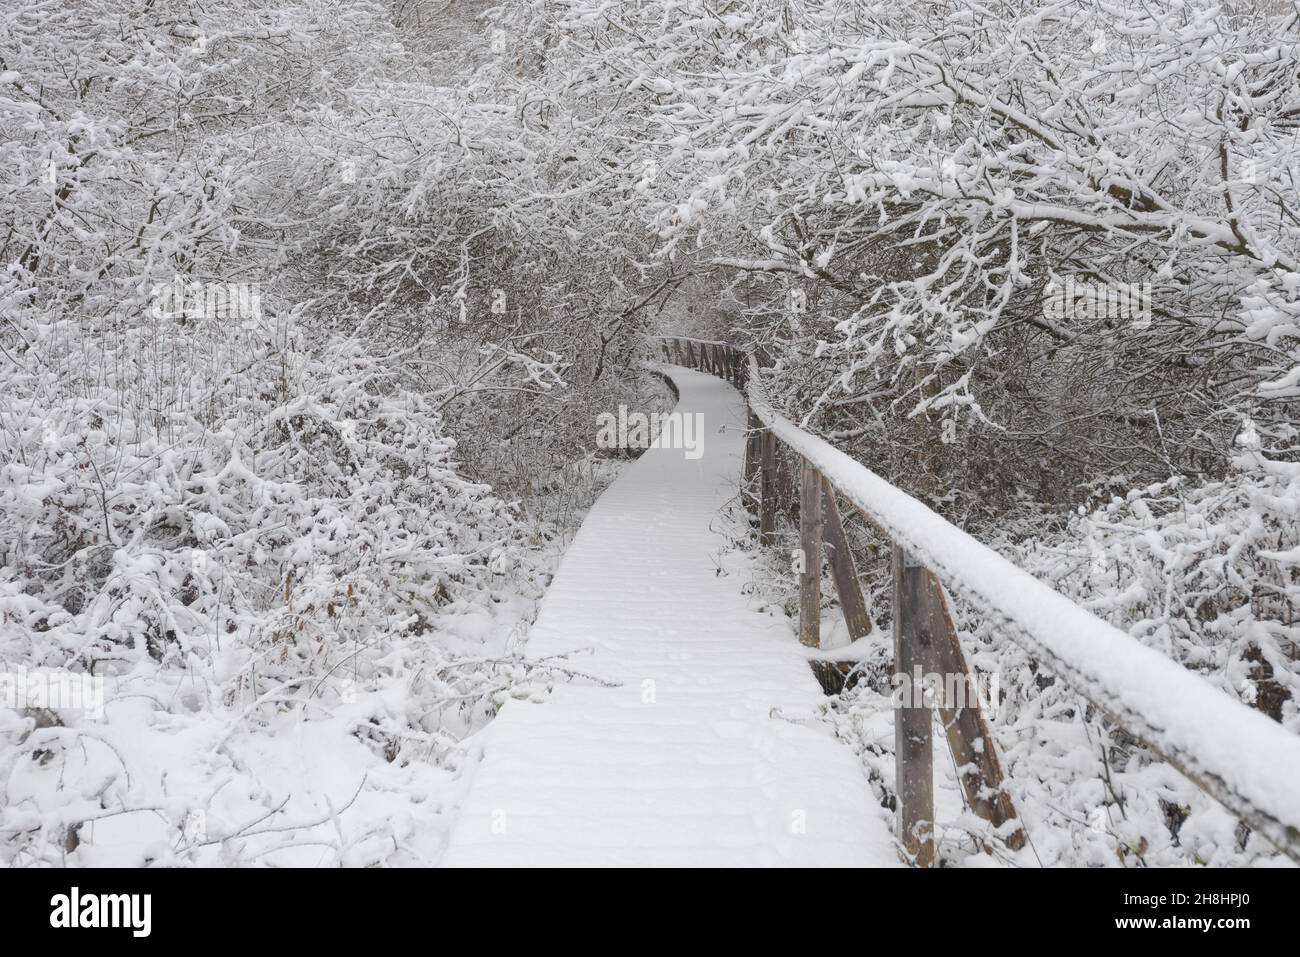 La naturaleza de madera estudia camino que conduce a través de dióxido de carbono que almacena páramos y turberas en Baviera en invierno con paisaje cubierto de nieve y árboles Foto de stock